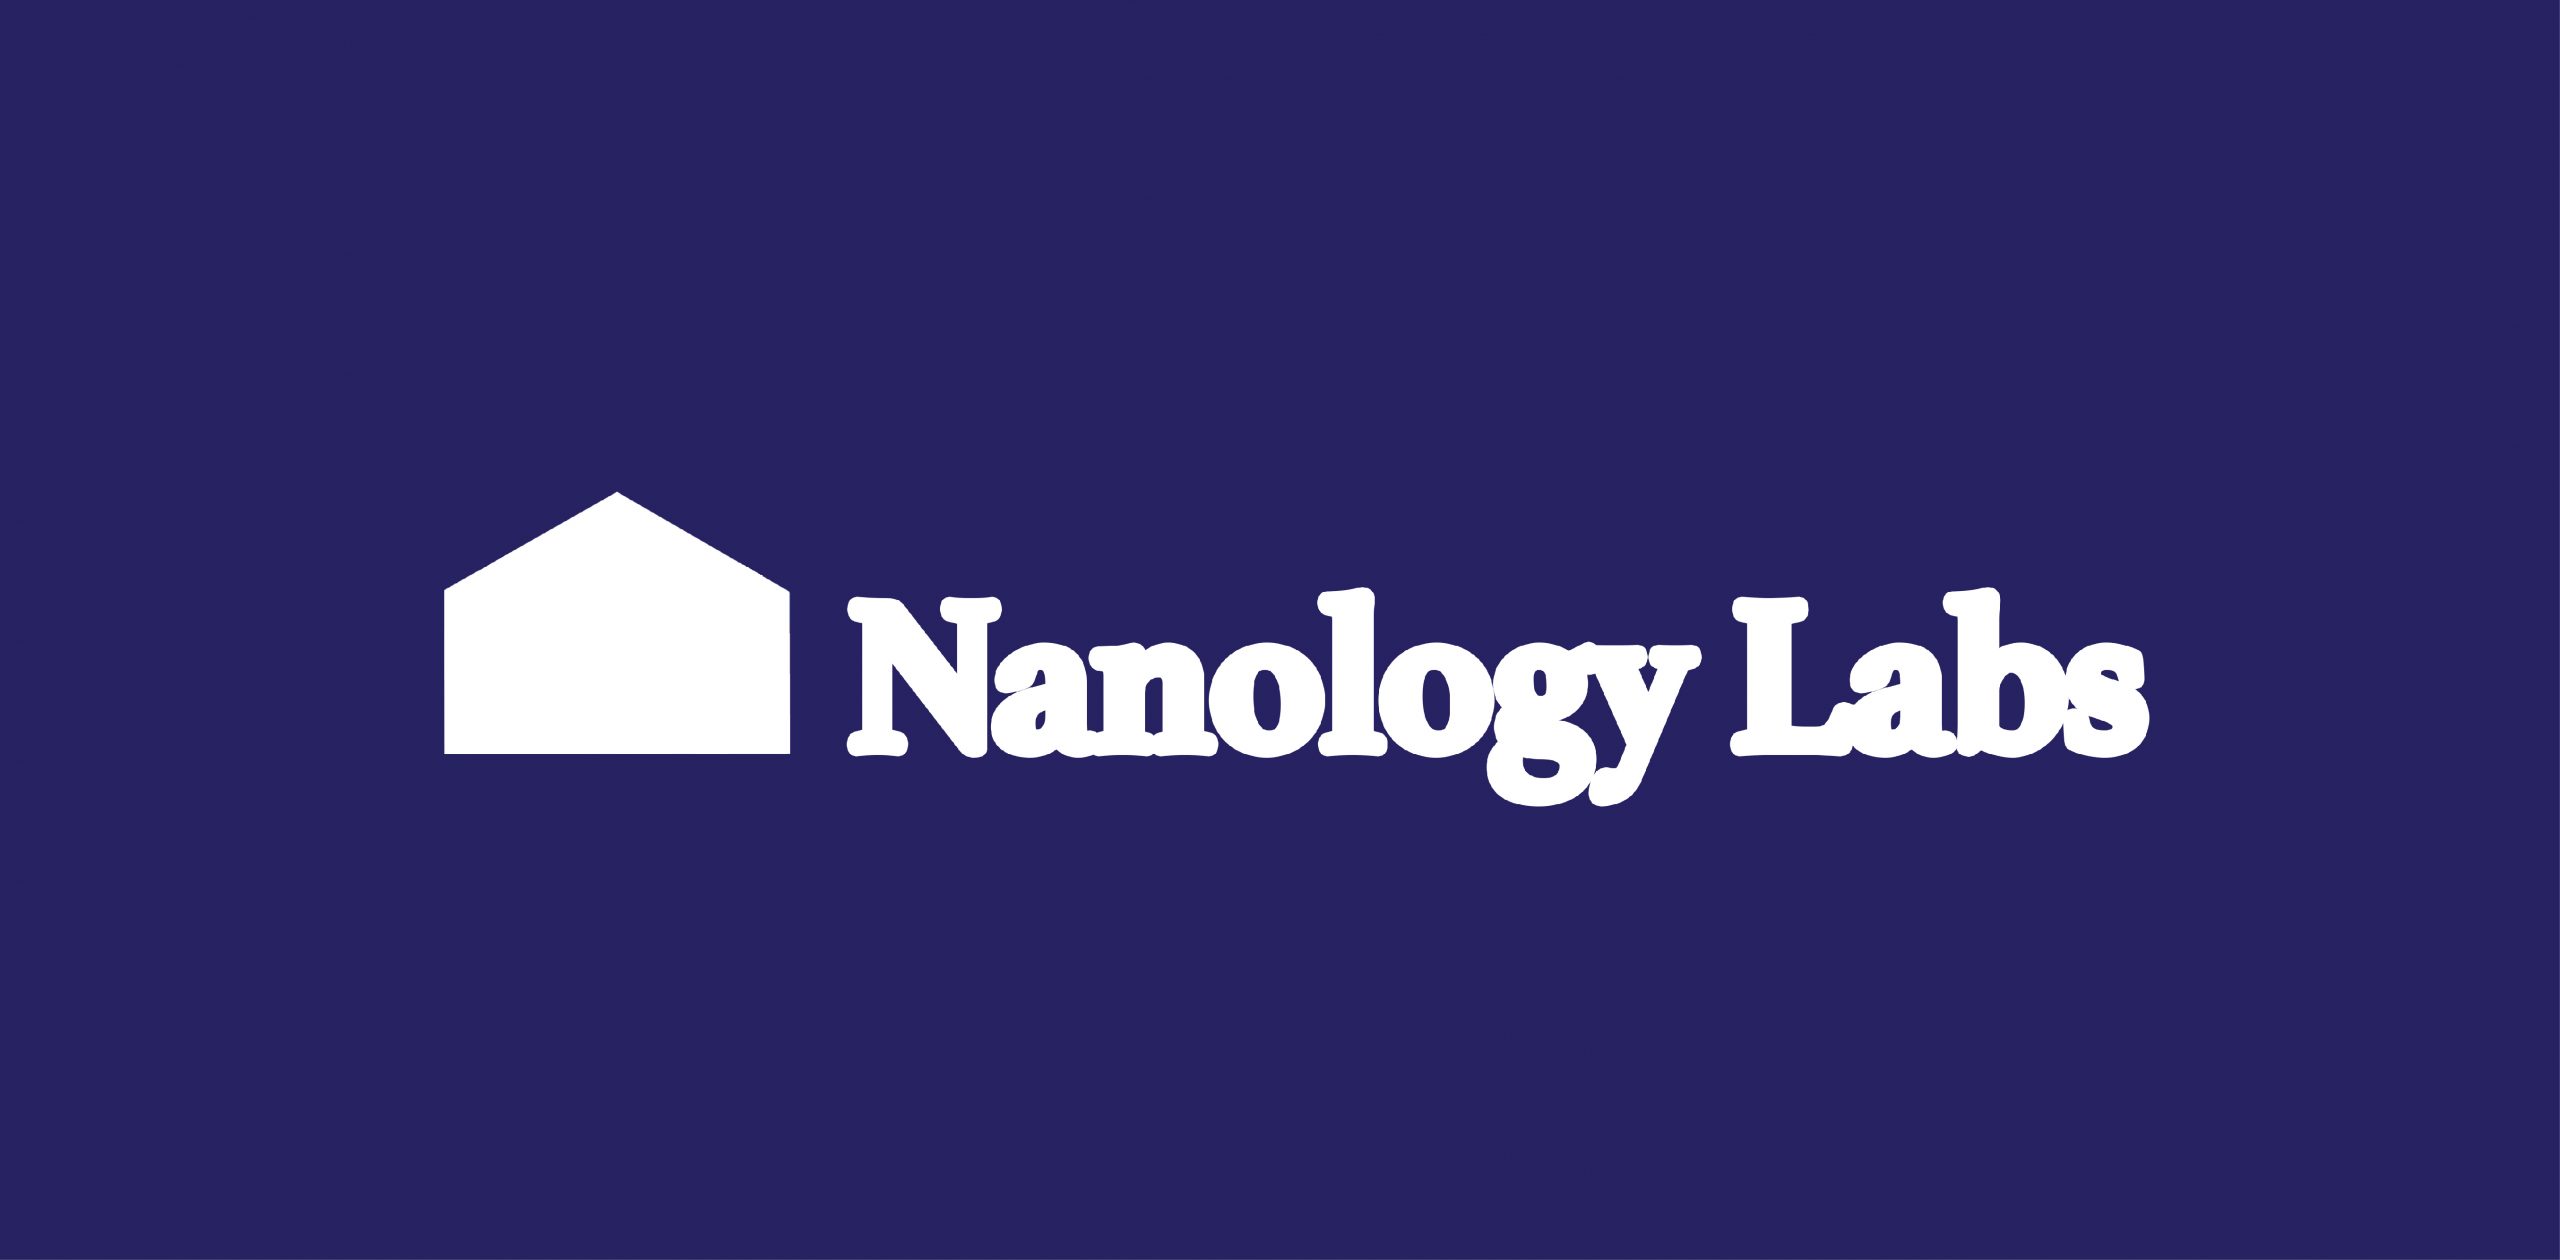 Nanology Labs__Fond_violet